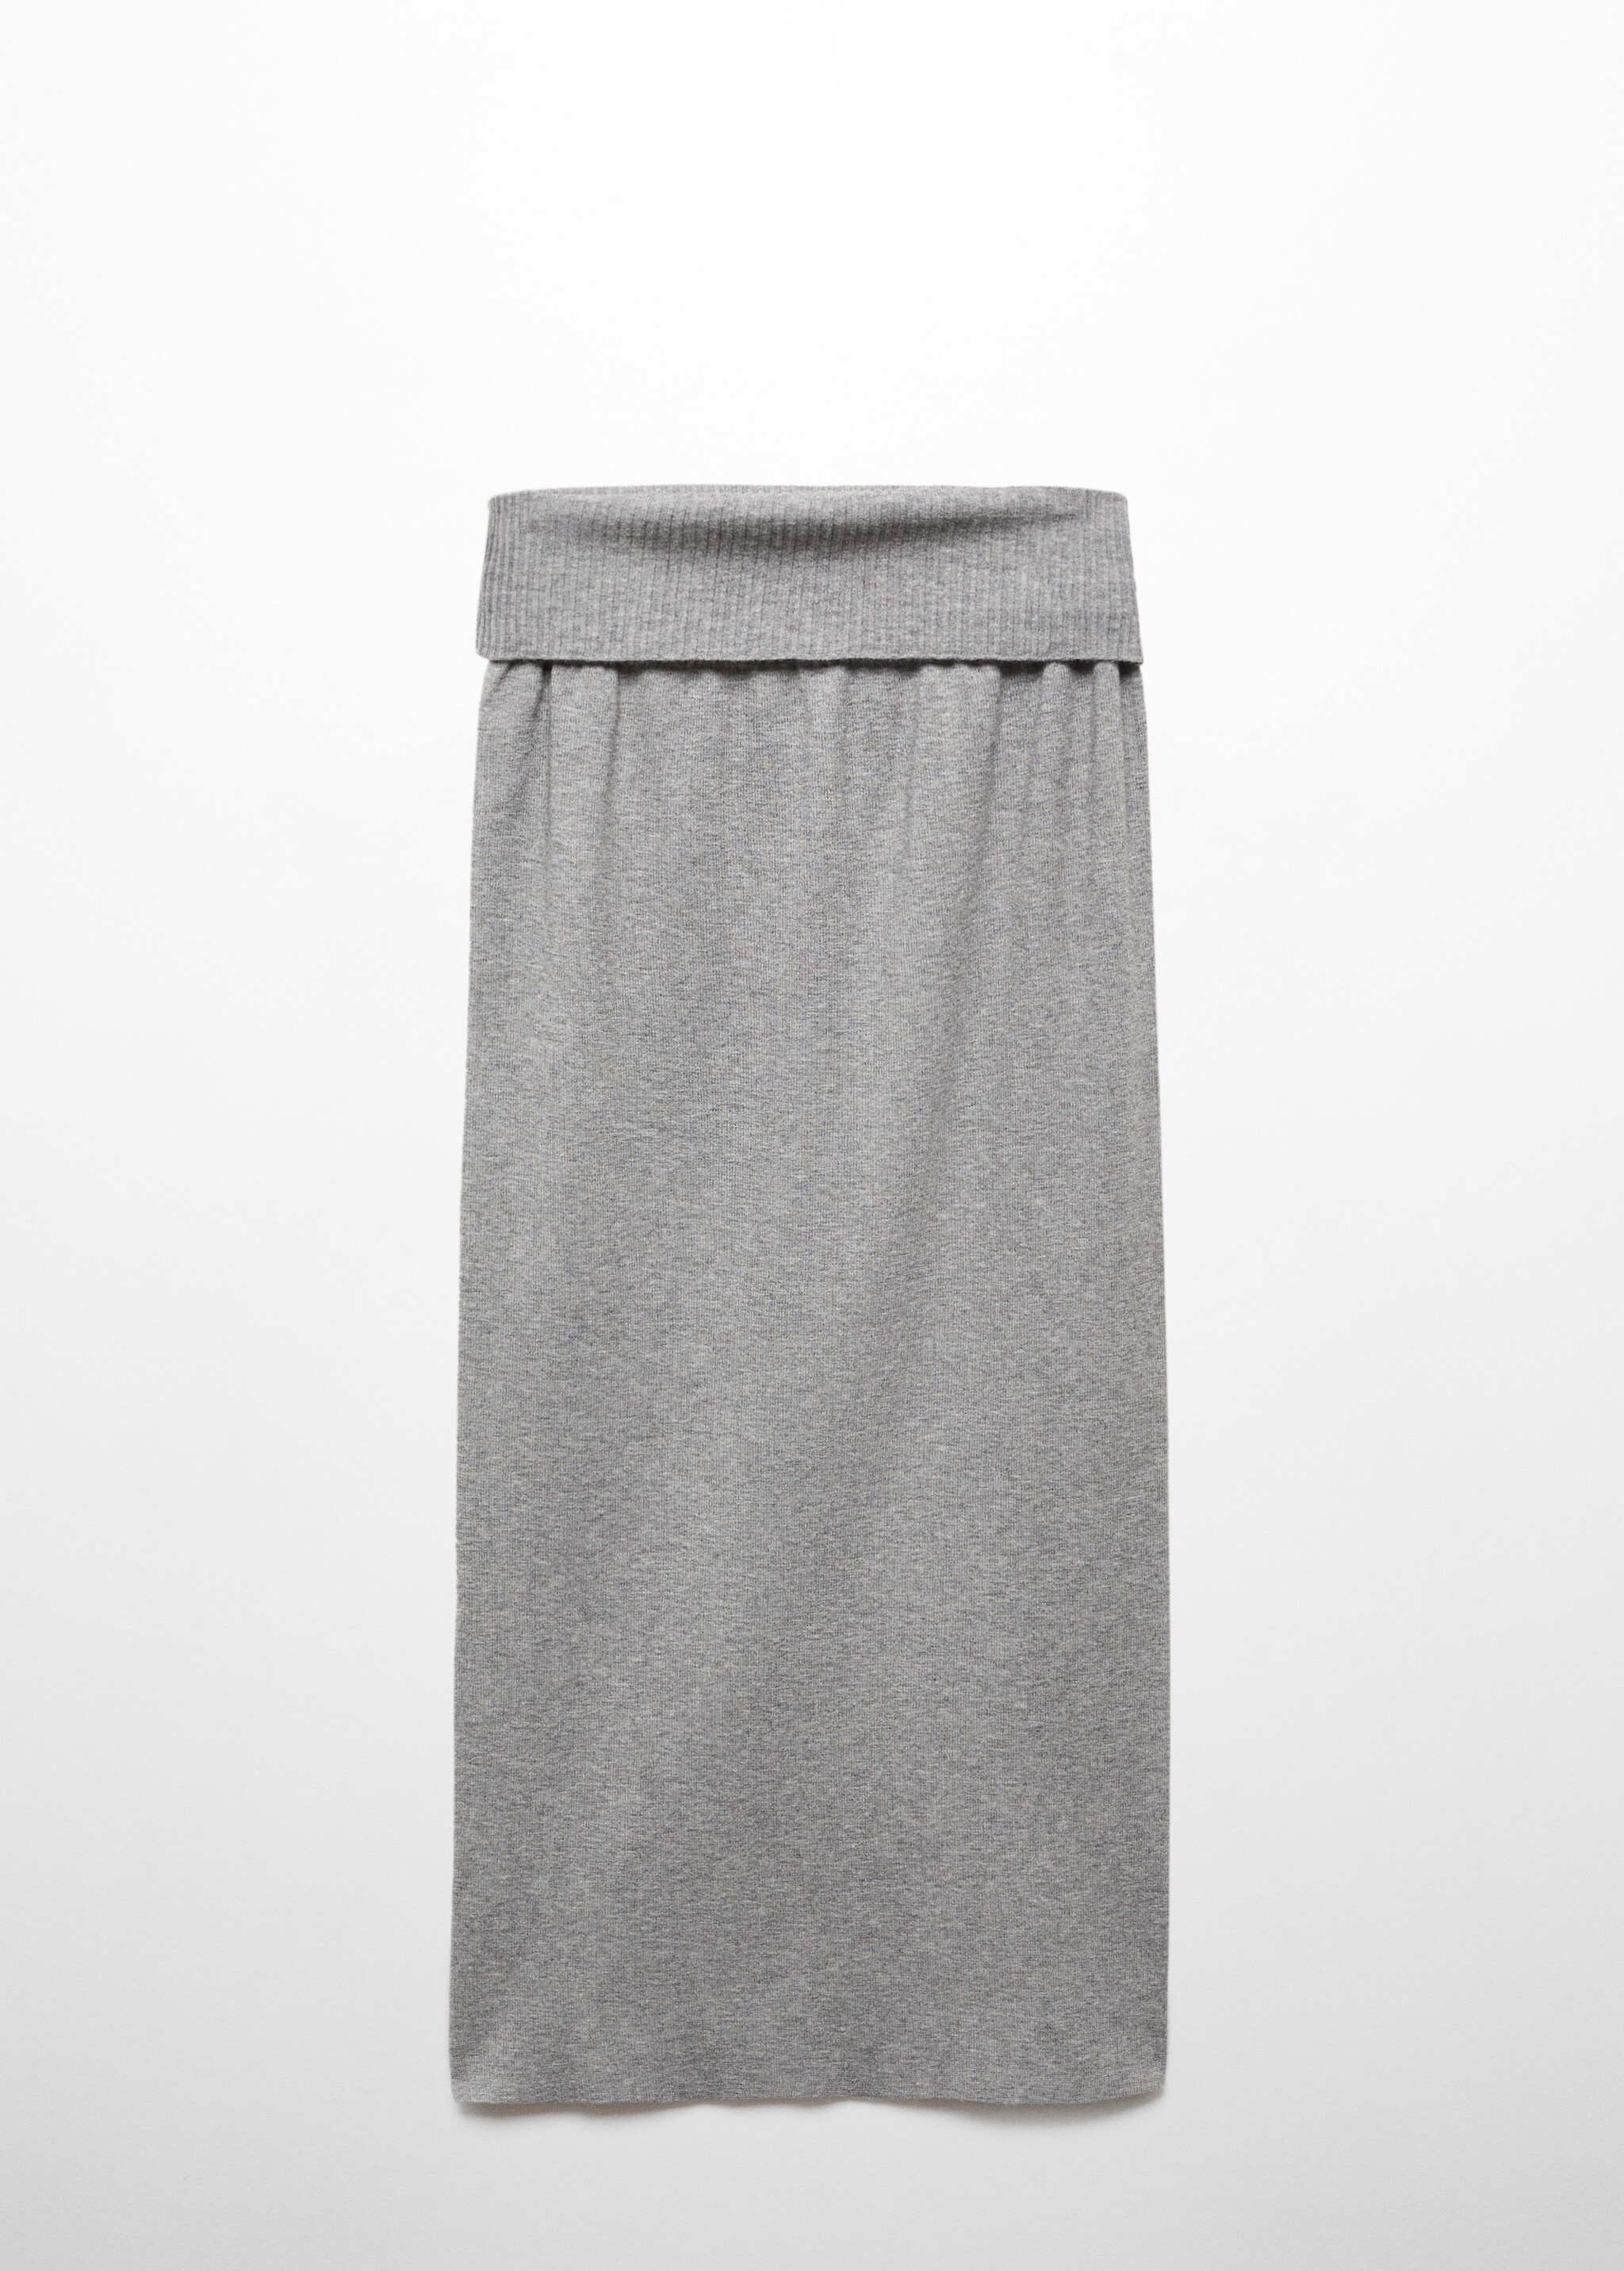 Длинная юбка из трикотажа - Изделие без модели